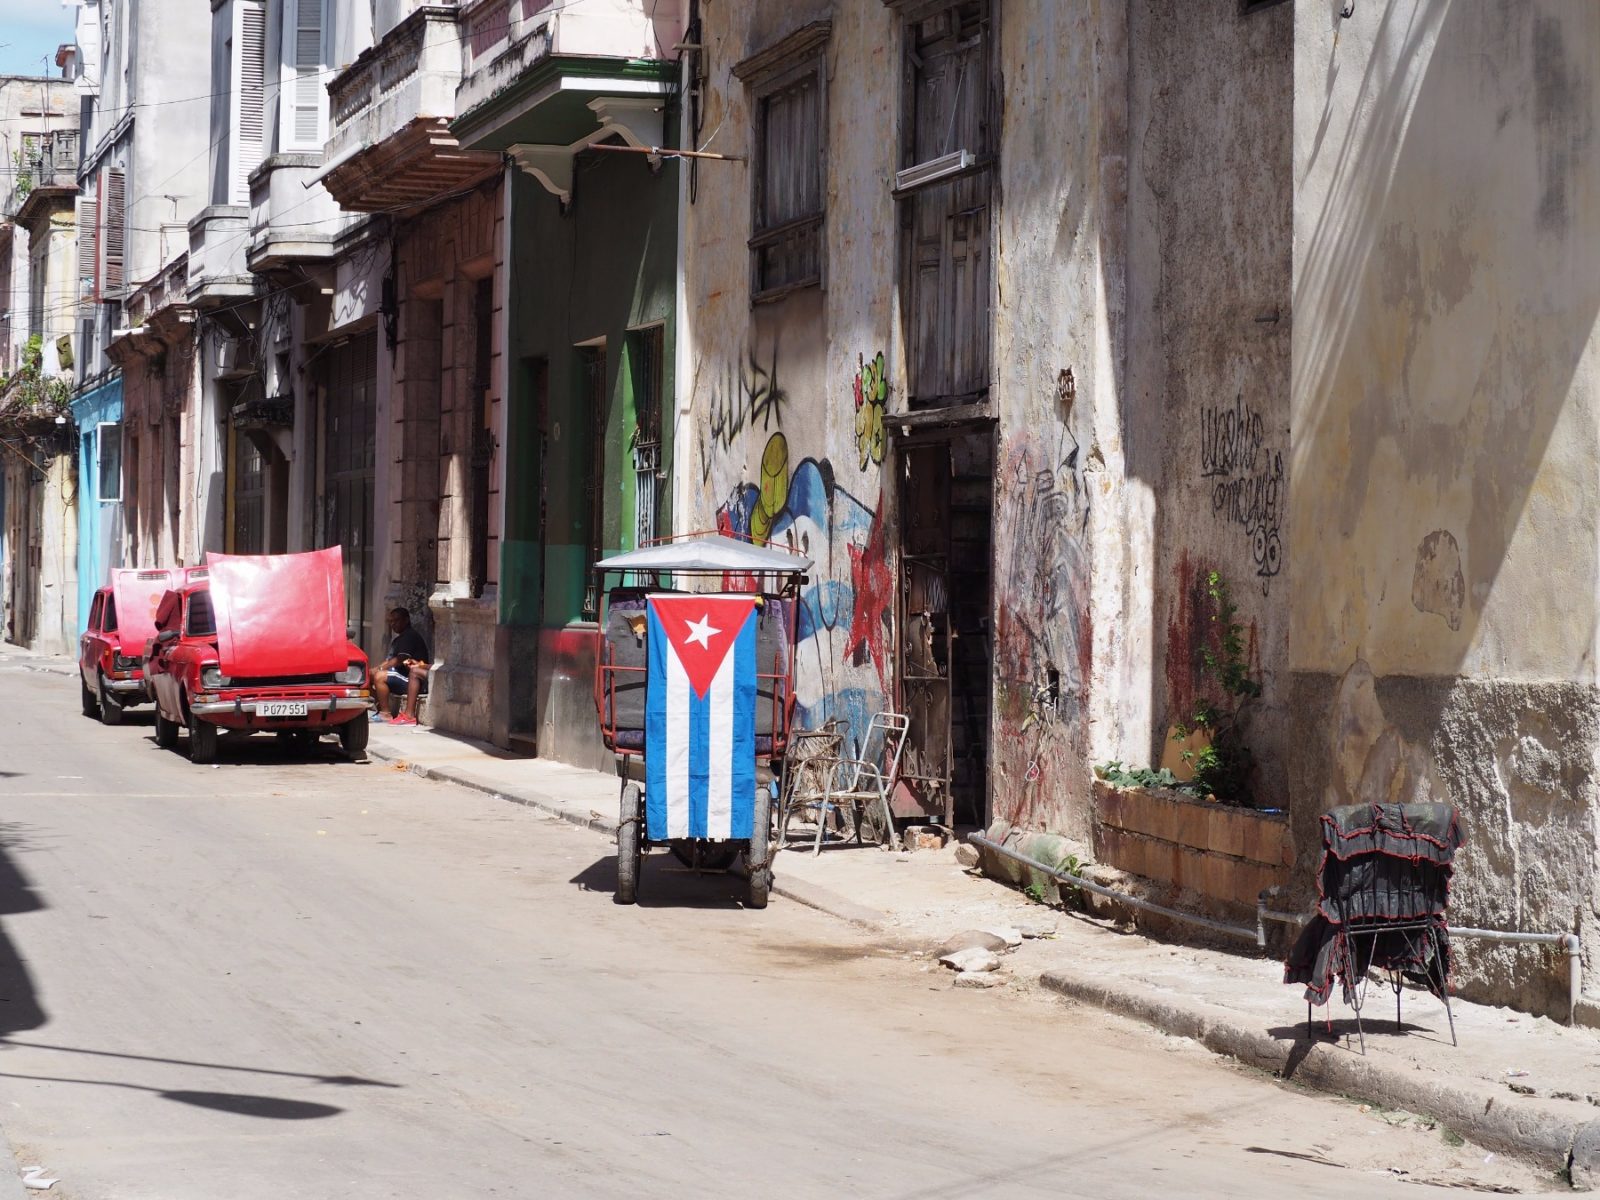 A Cuban flag on the street of Havana